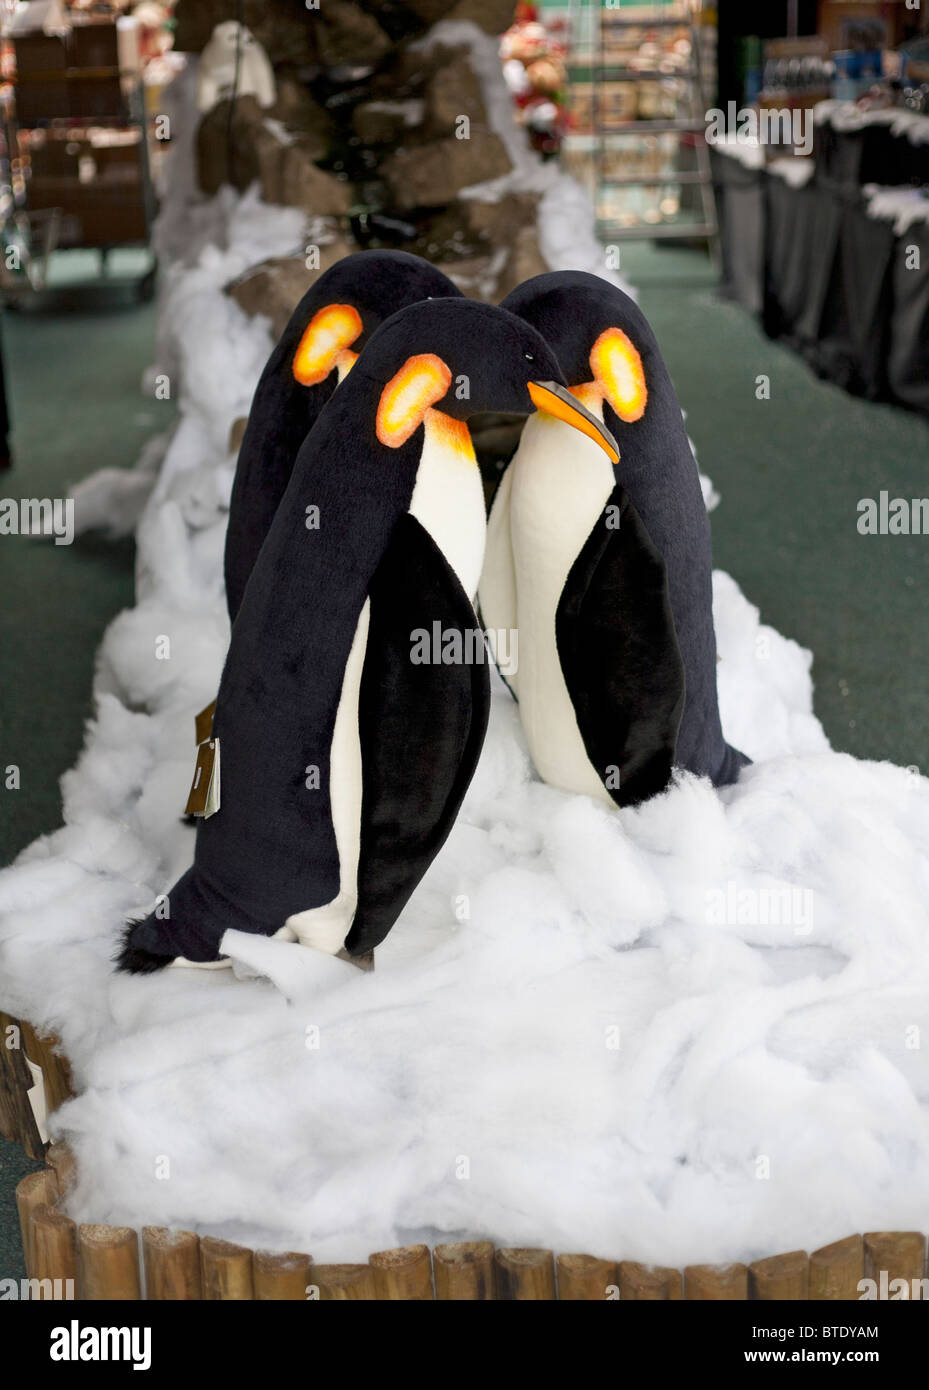 Les chiffres des pingouins dans le cadre d'un centre de jardin affichage de Noël Banque D'Images